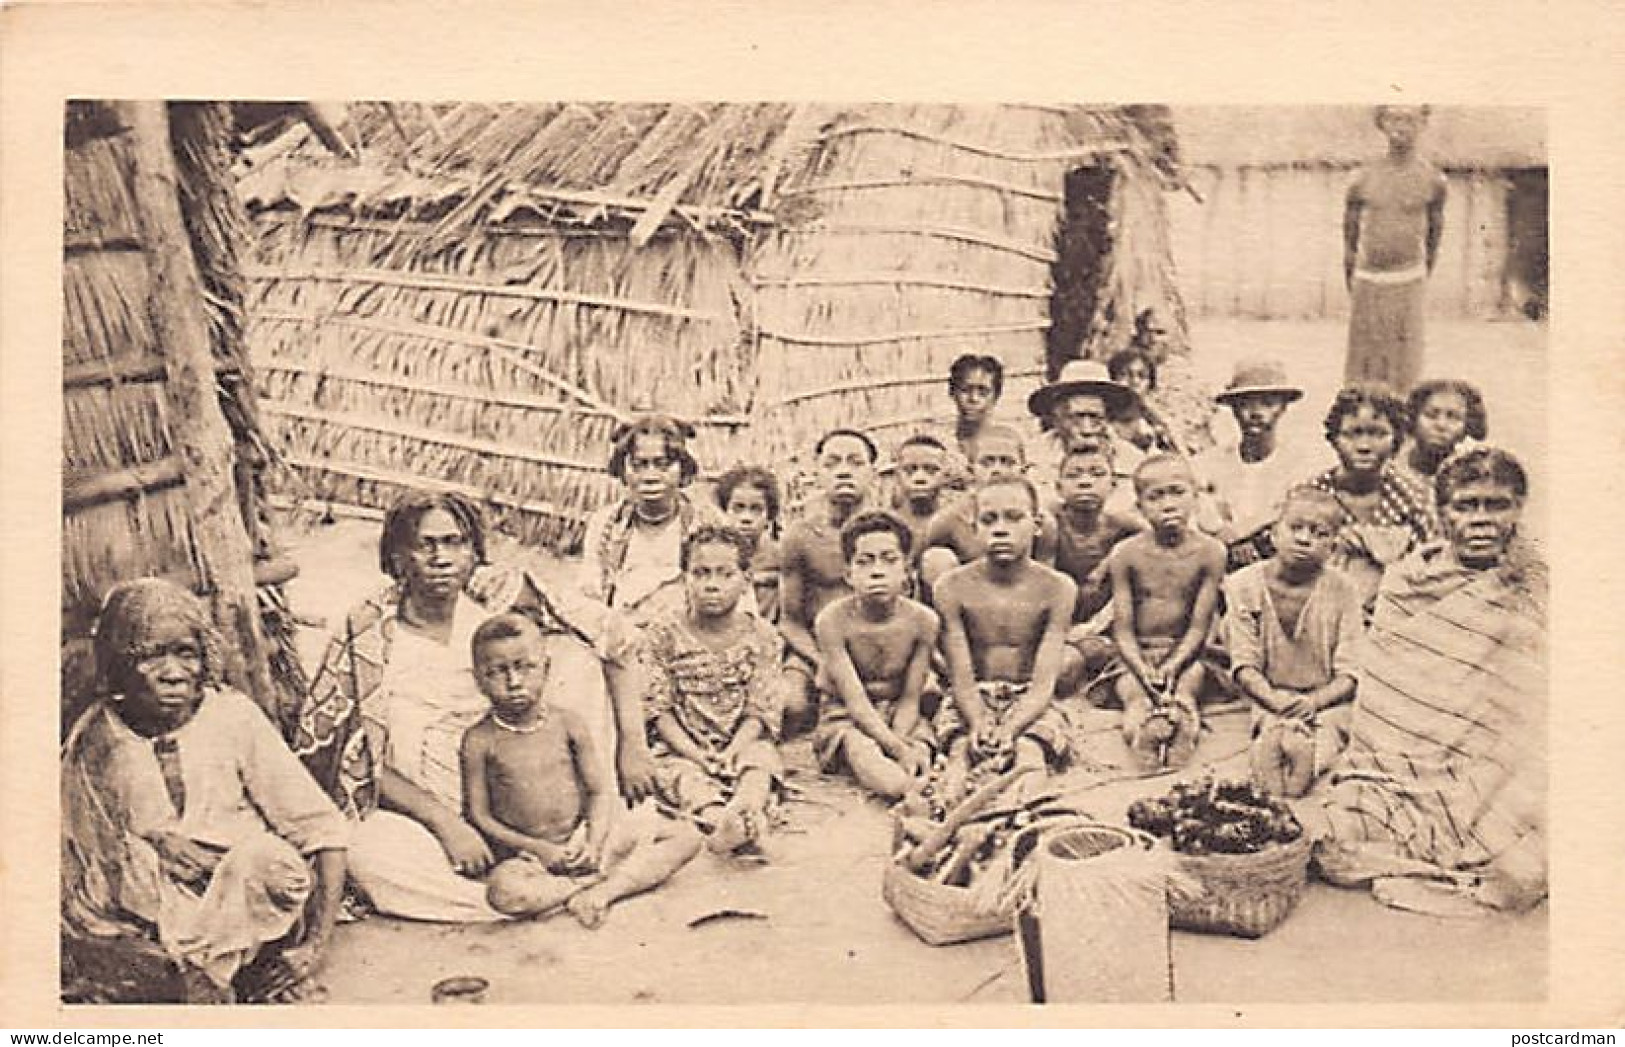 Madagascar - Une Famille Sakalave - Ed. Société Des Missions Evangéliques  - Madagascar